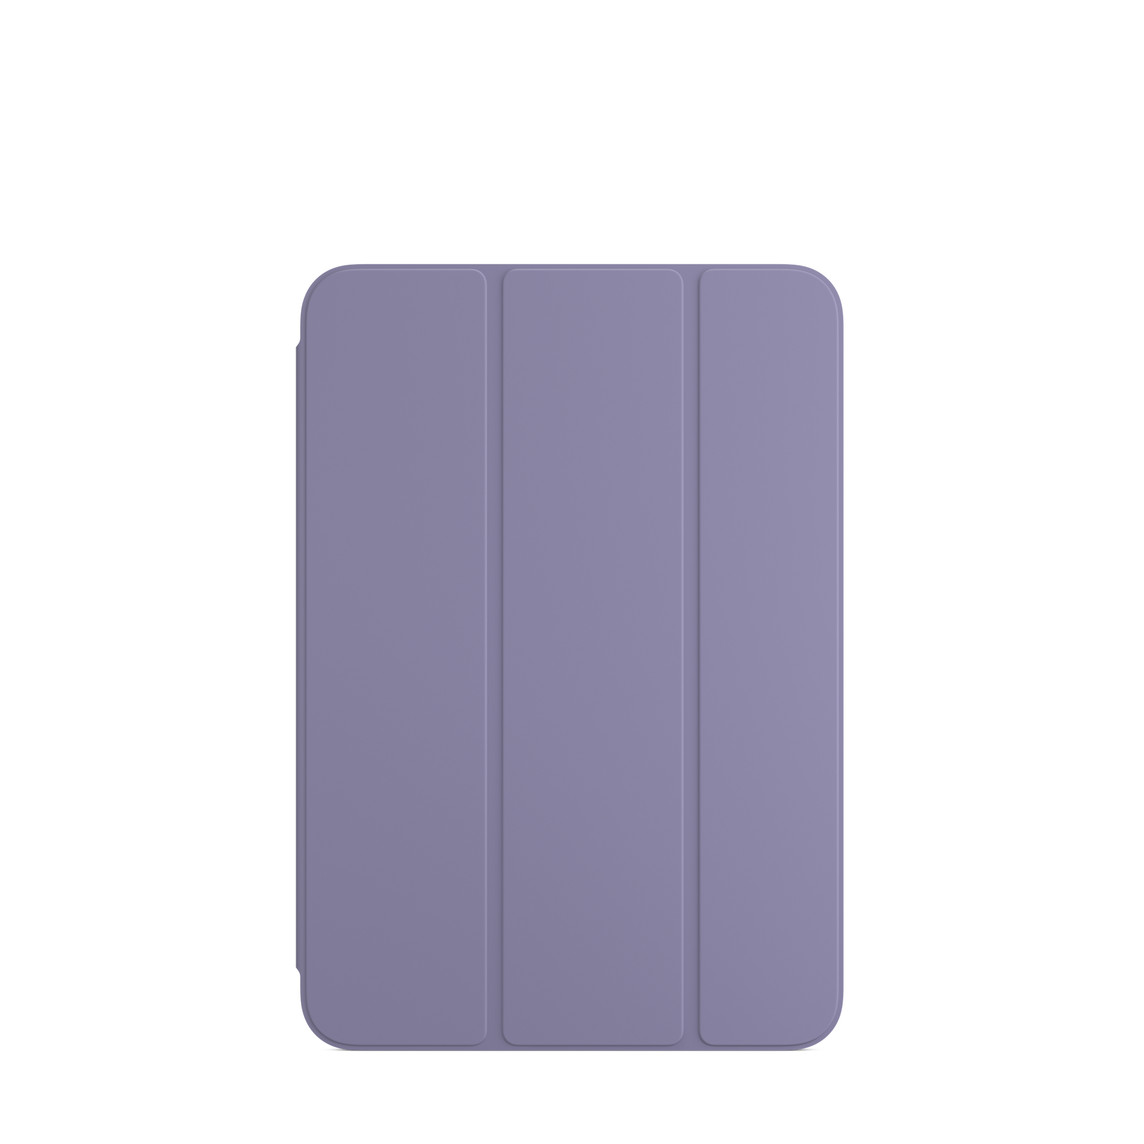 Funda Smart Folio para el iPad mini (6.ª generación) en color lavanda inglesa.